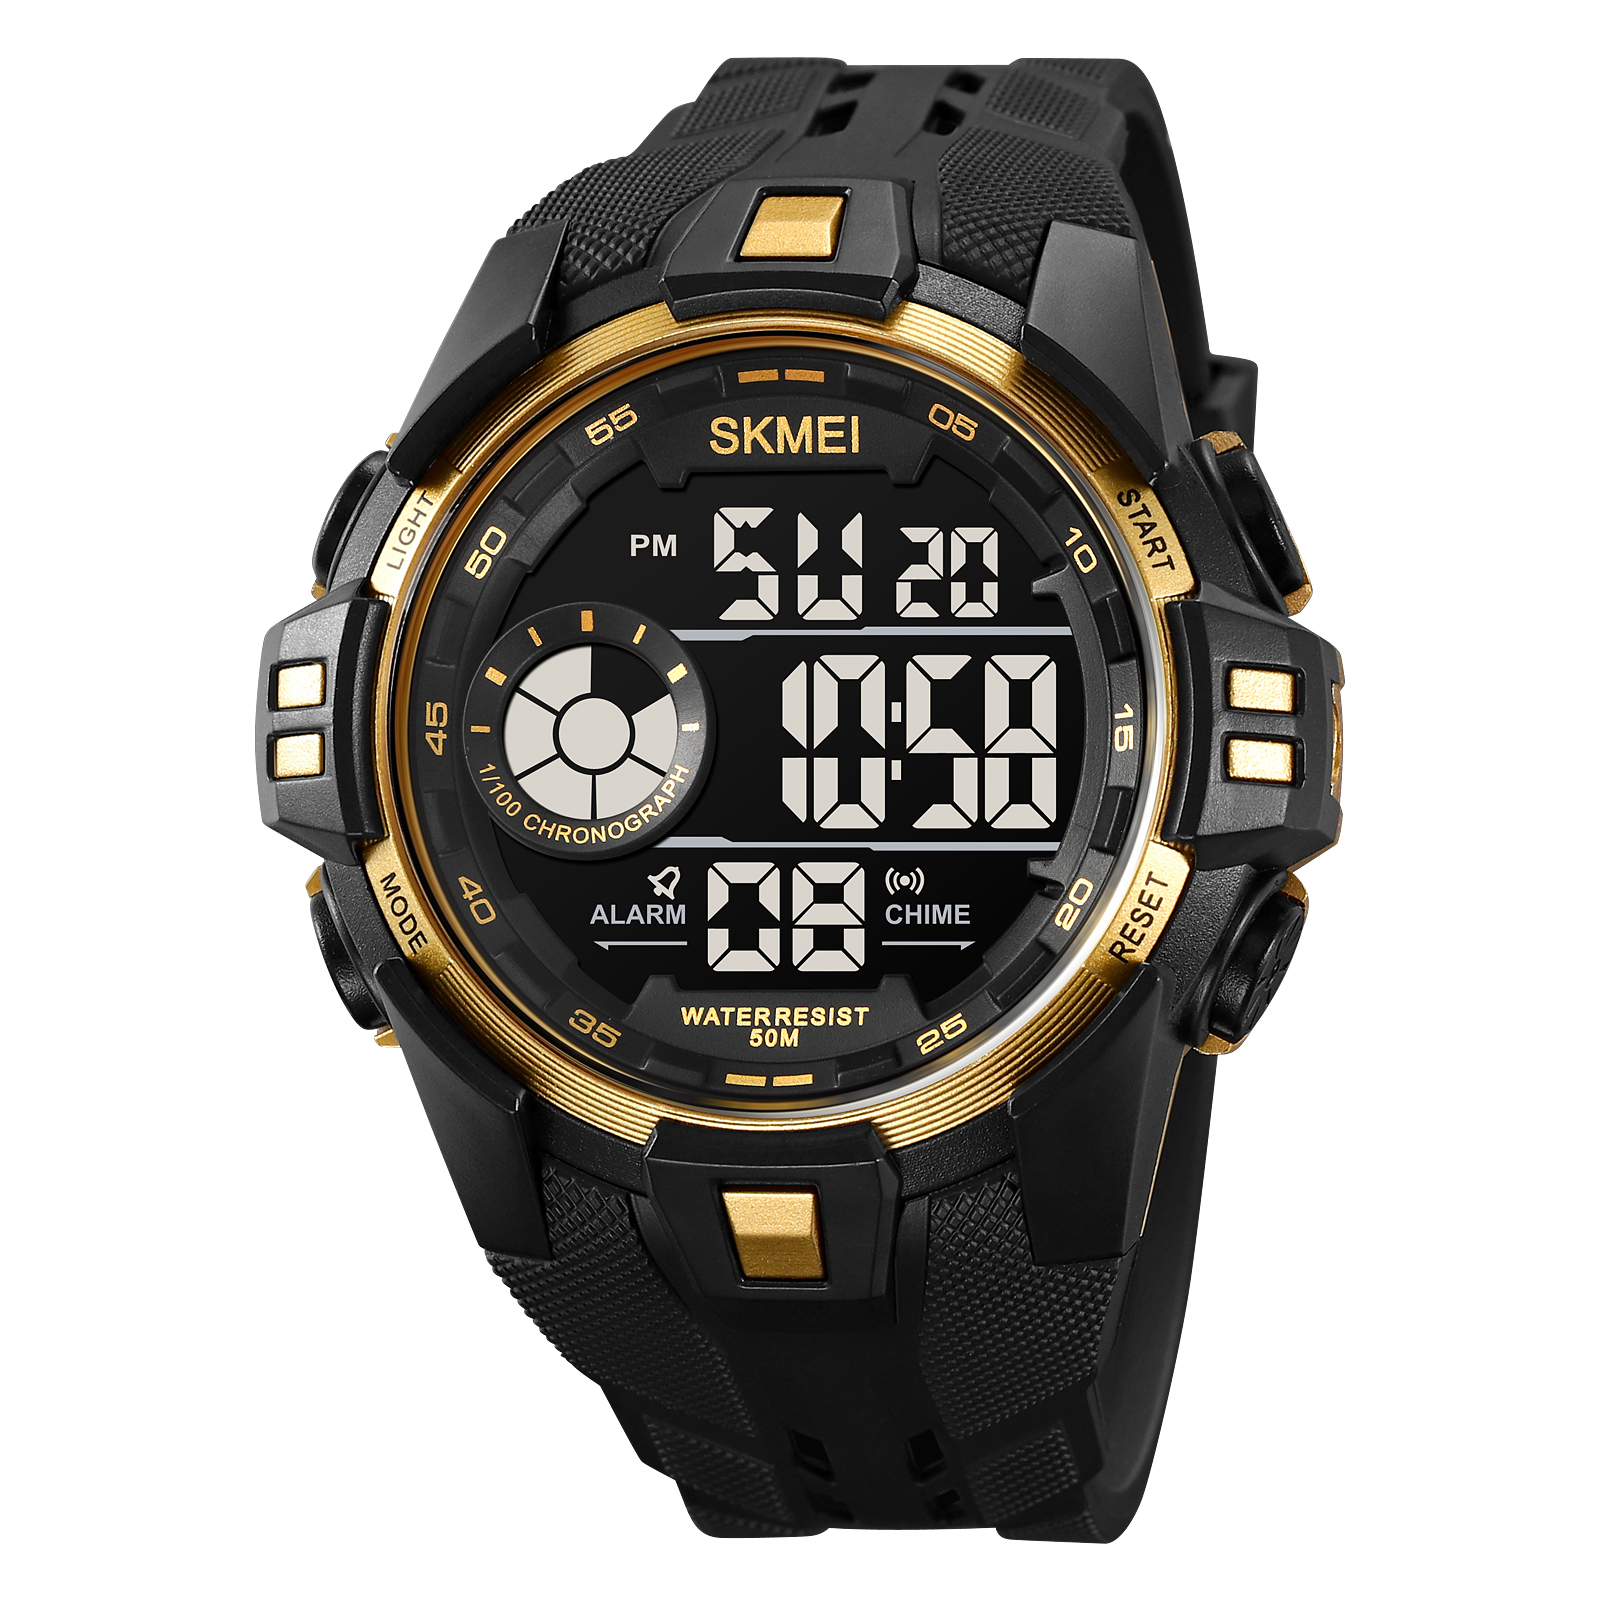 SKMEI 2123 Electronic watch